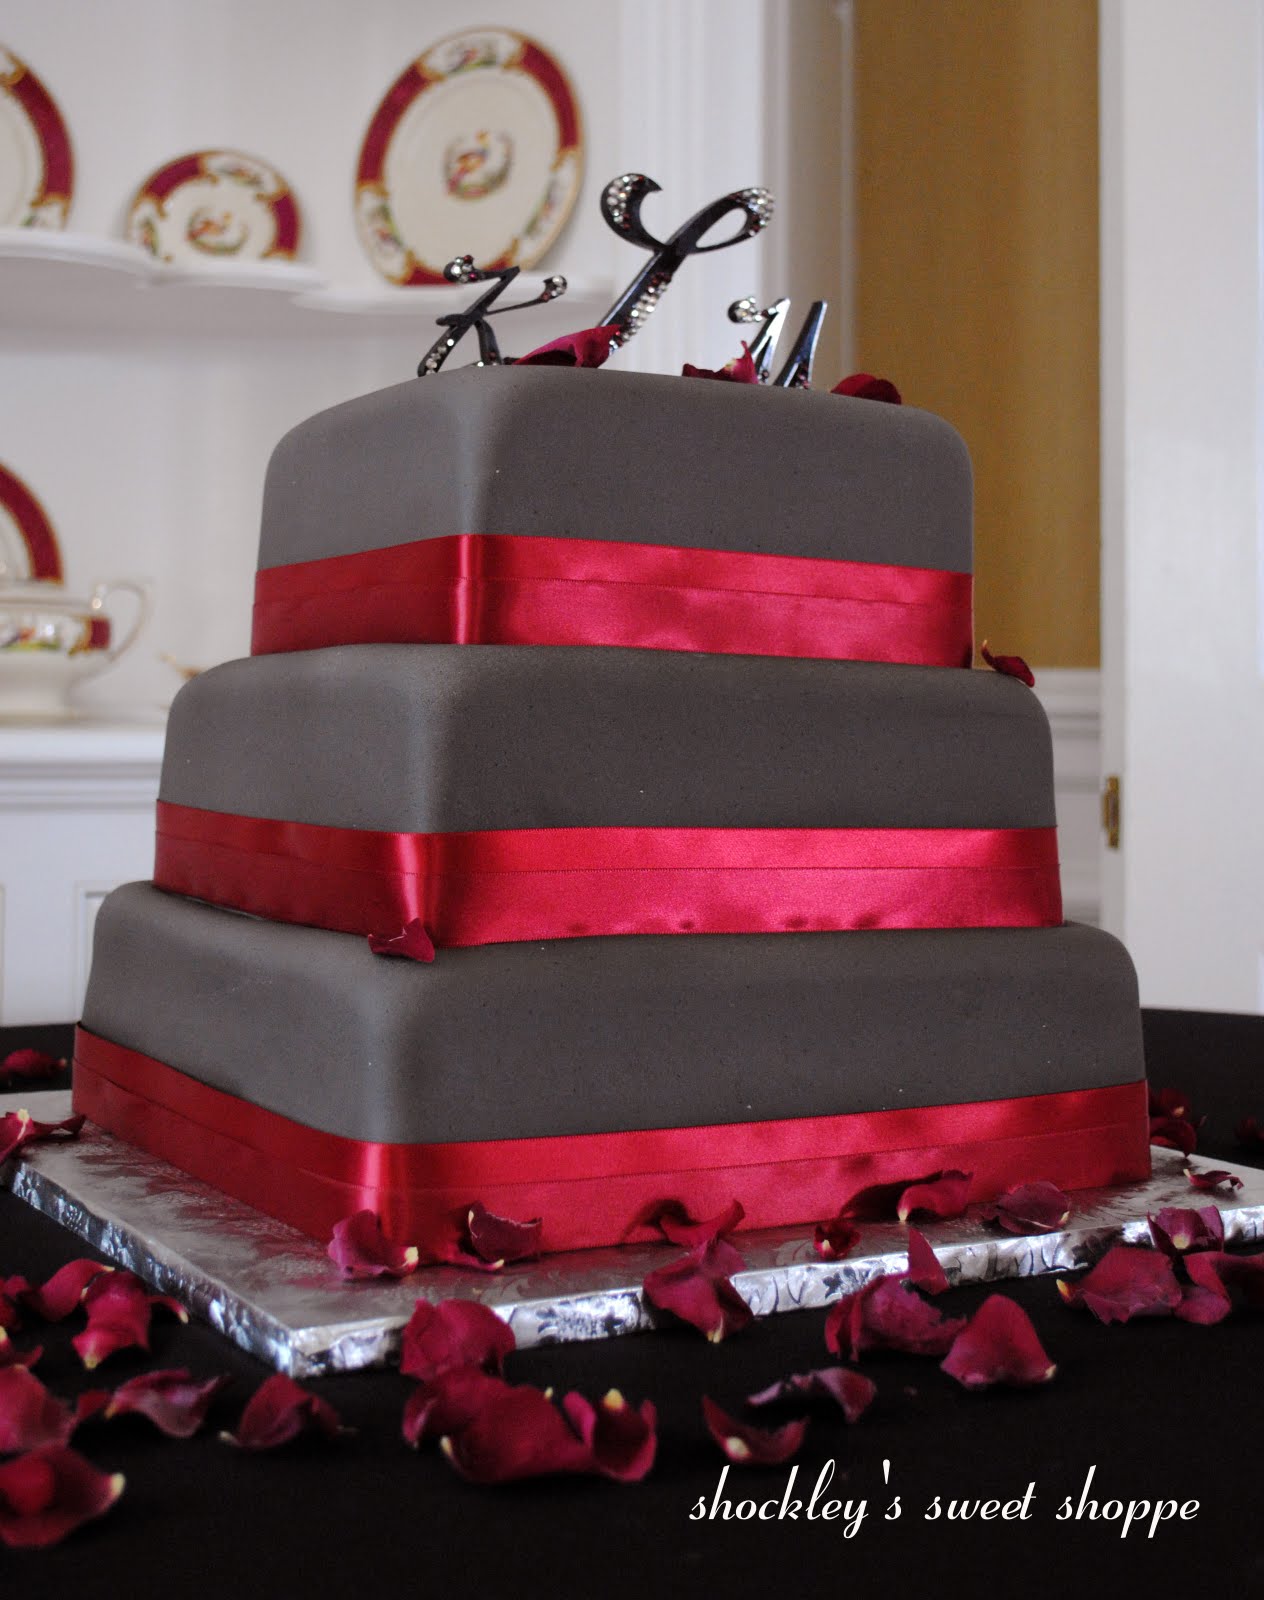 amazing wedding cakes